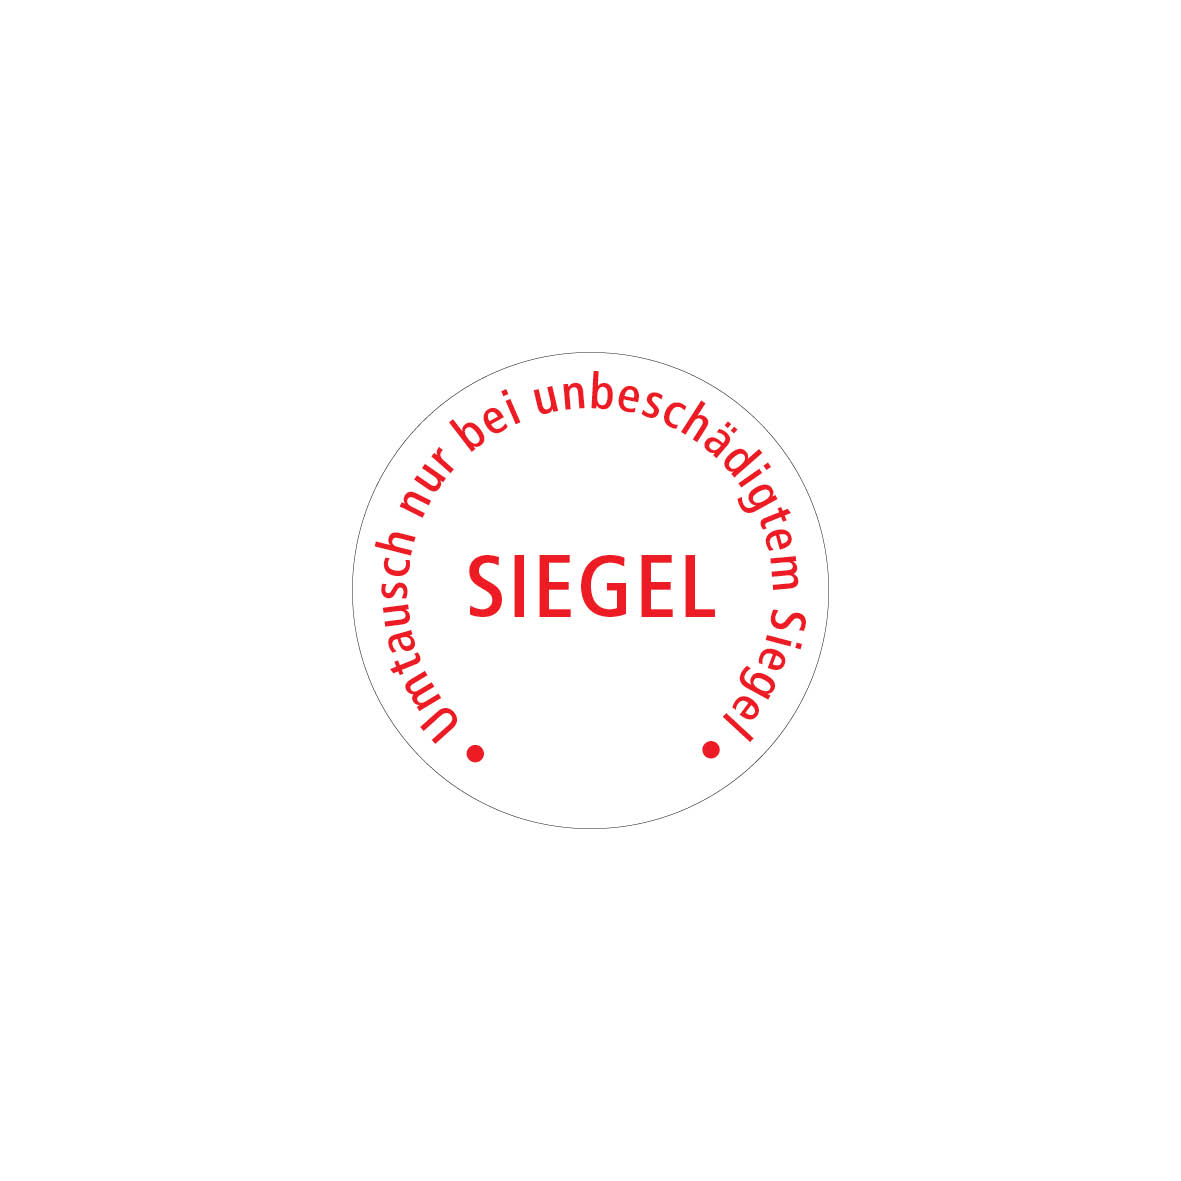 Sicherheitssiegel 4.0115, FO-F, weiss/rot, "SIEGEL-Umtausch nur bei unbschädigtem Siegel"